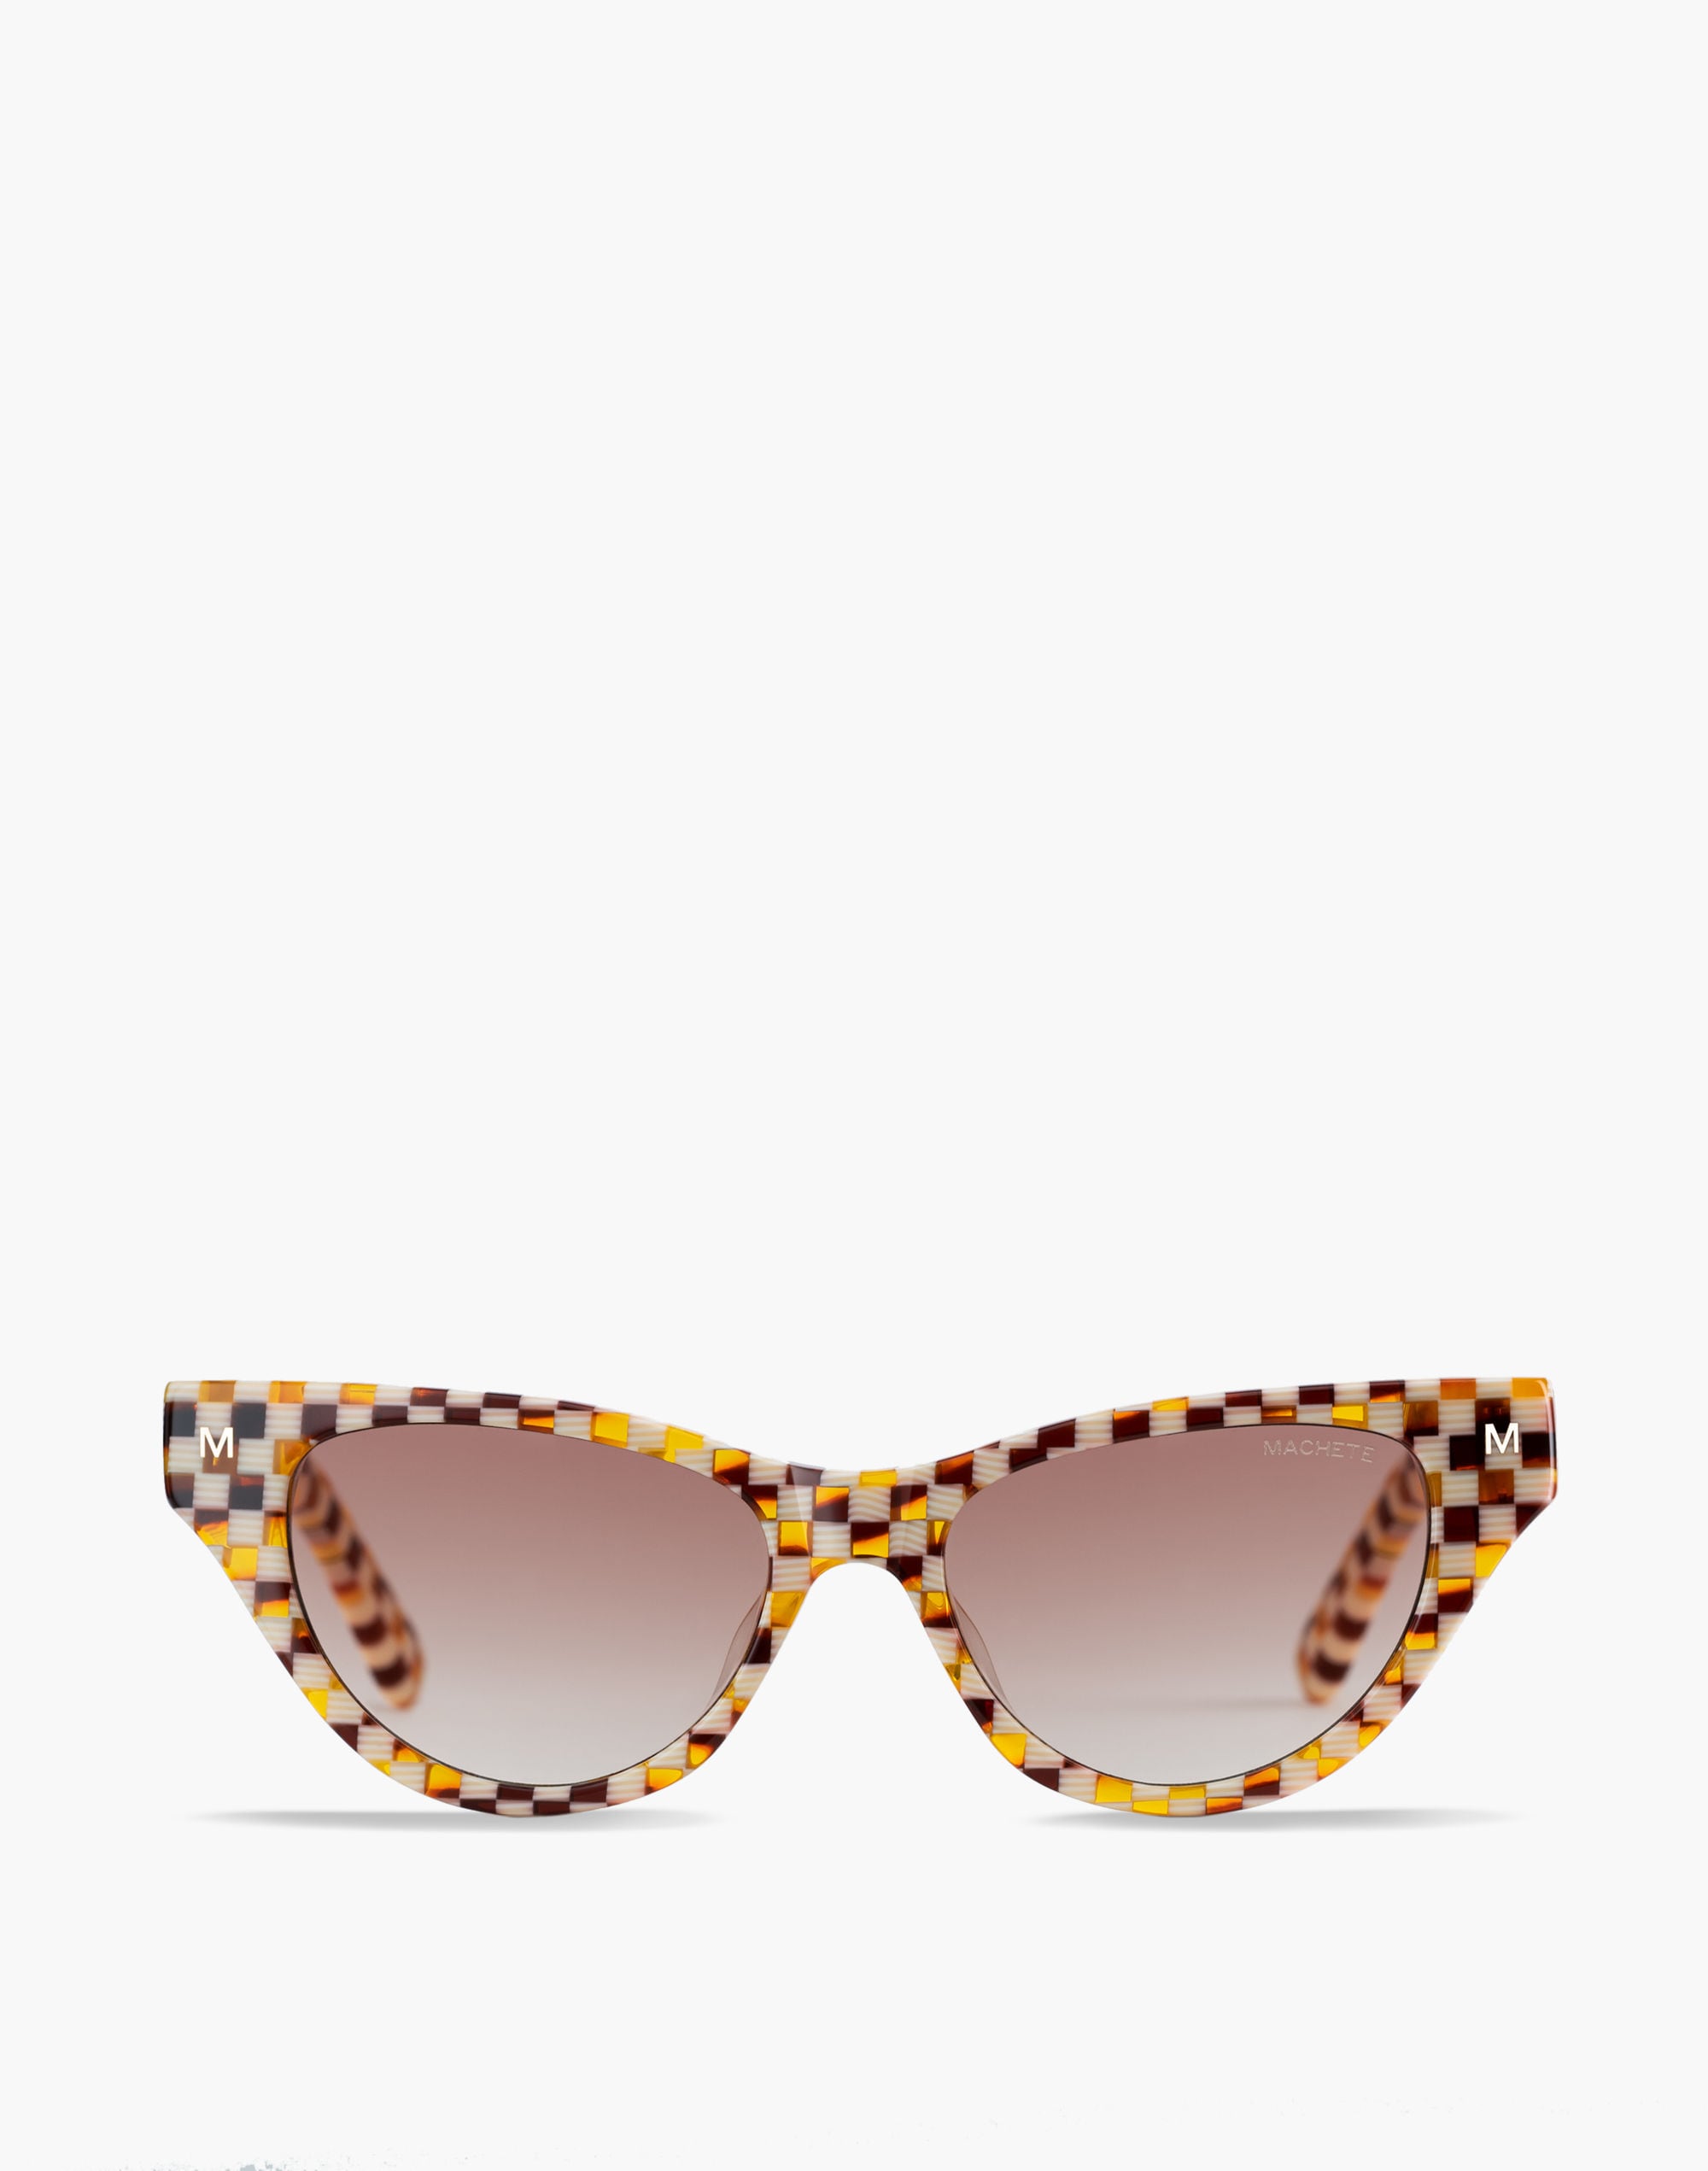 Mw Machete Suzy Sunglasses In Brown